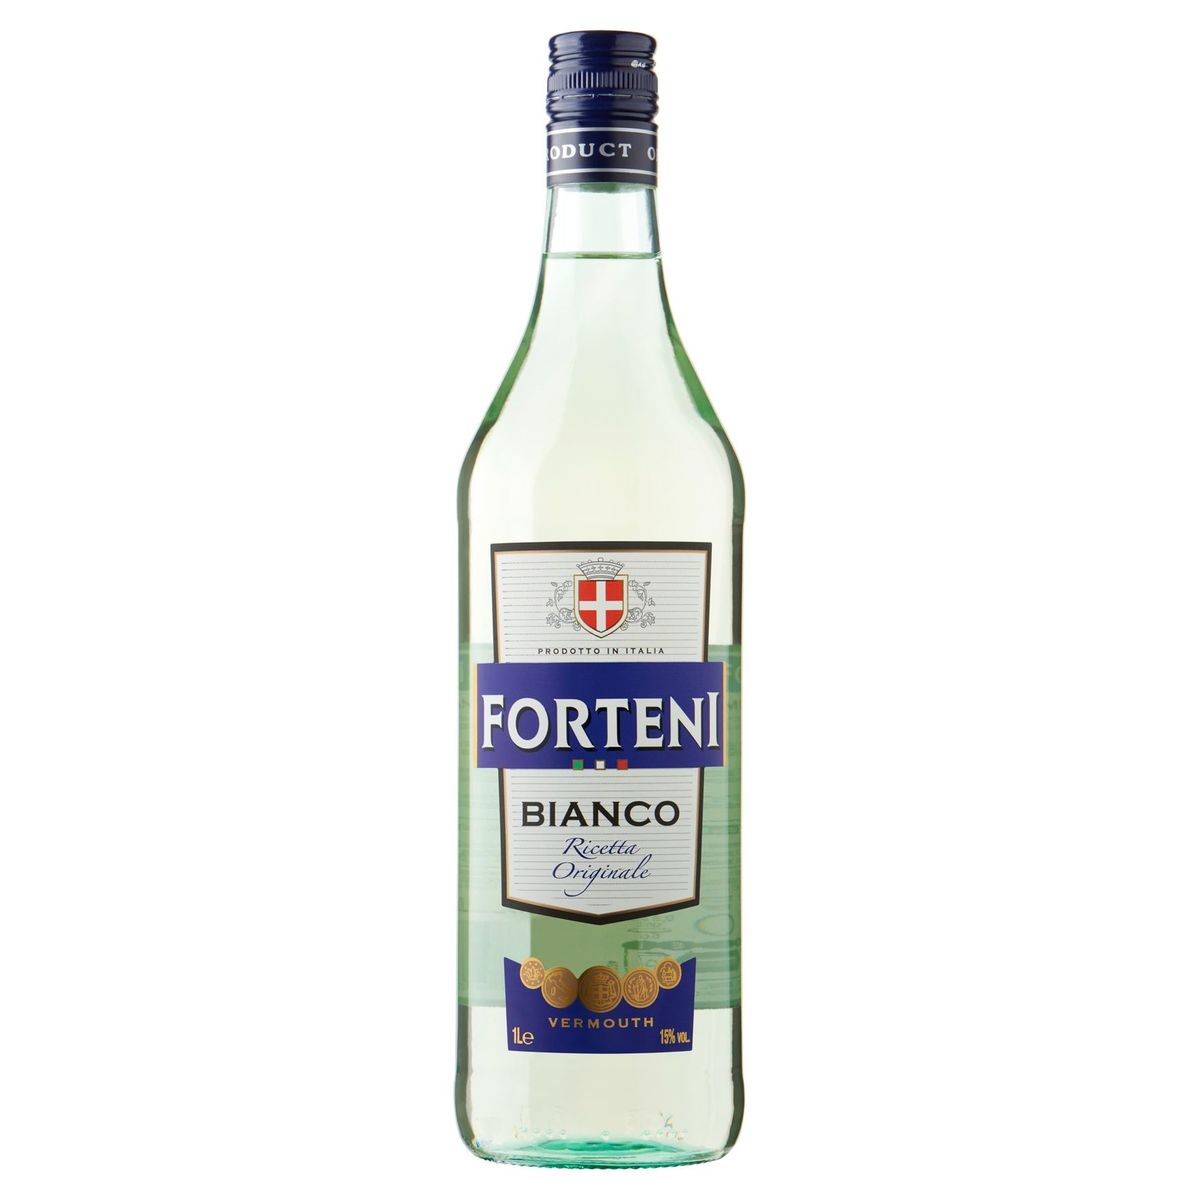 Forteni Bianco Vermouth 1 L